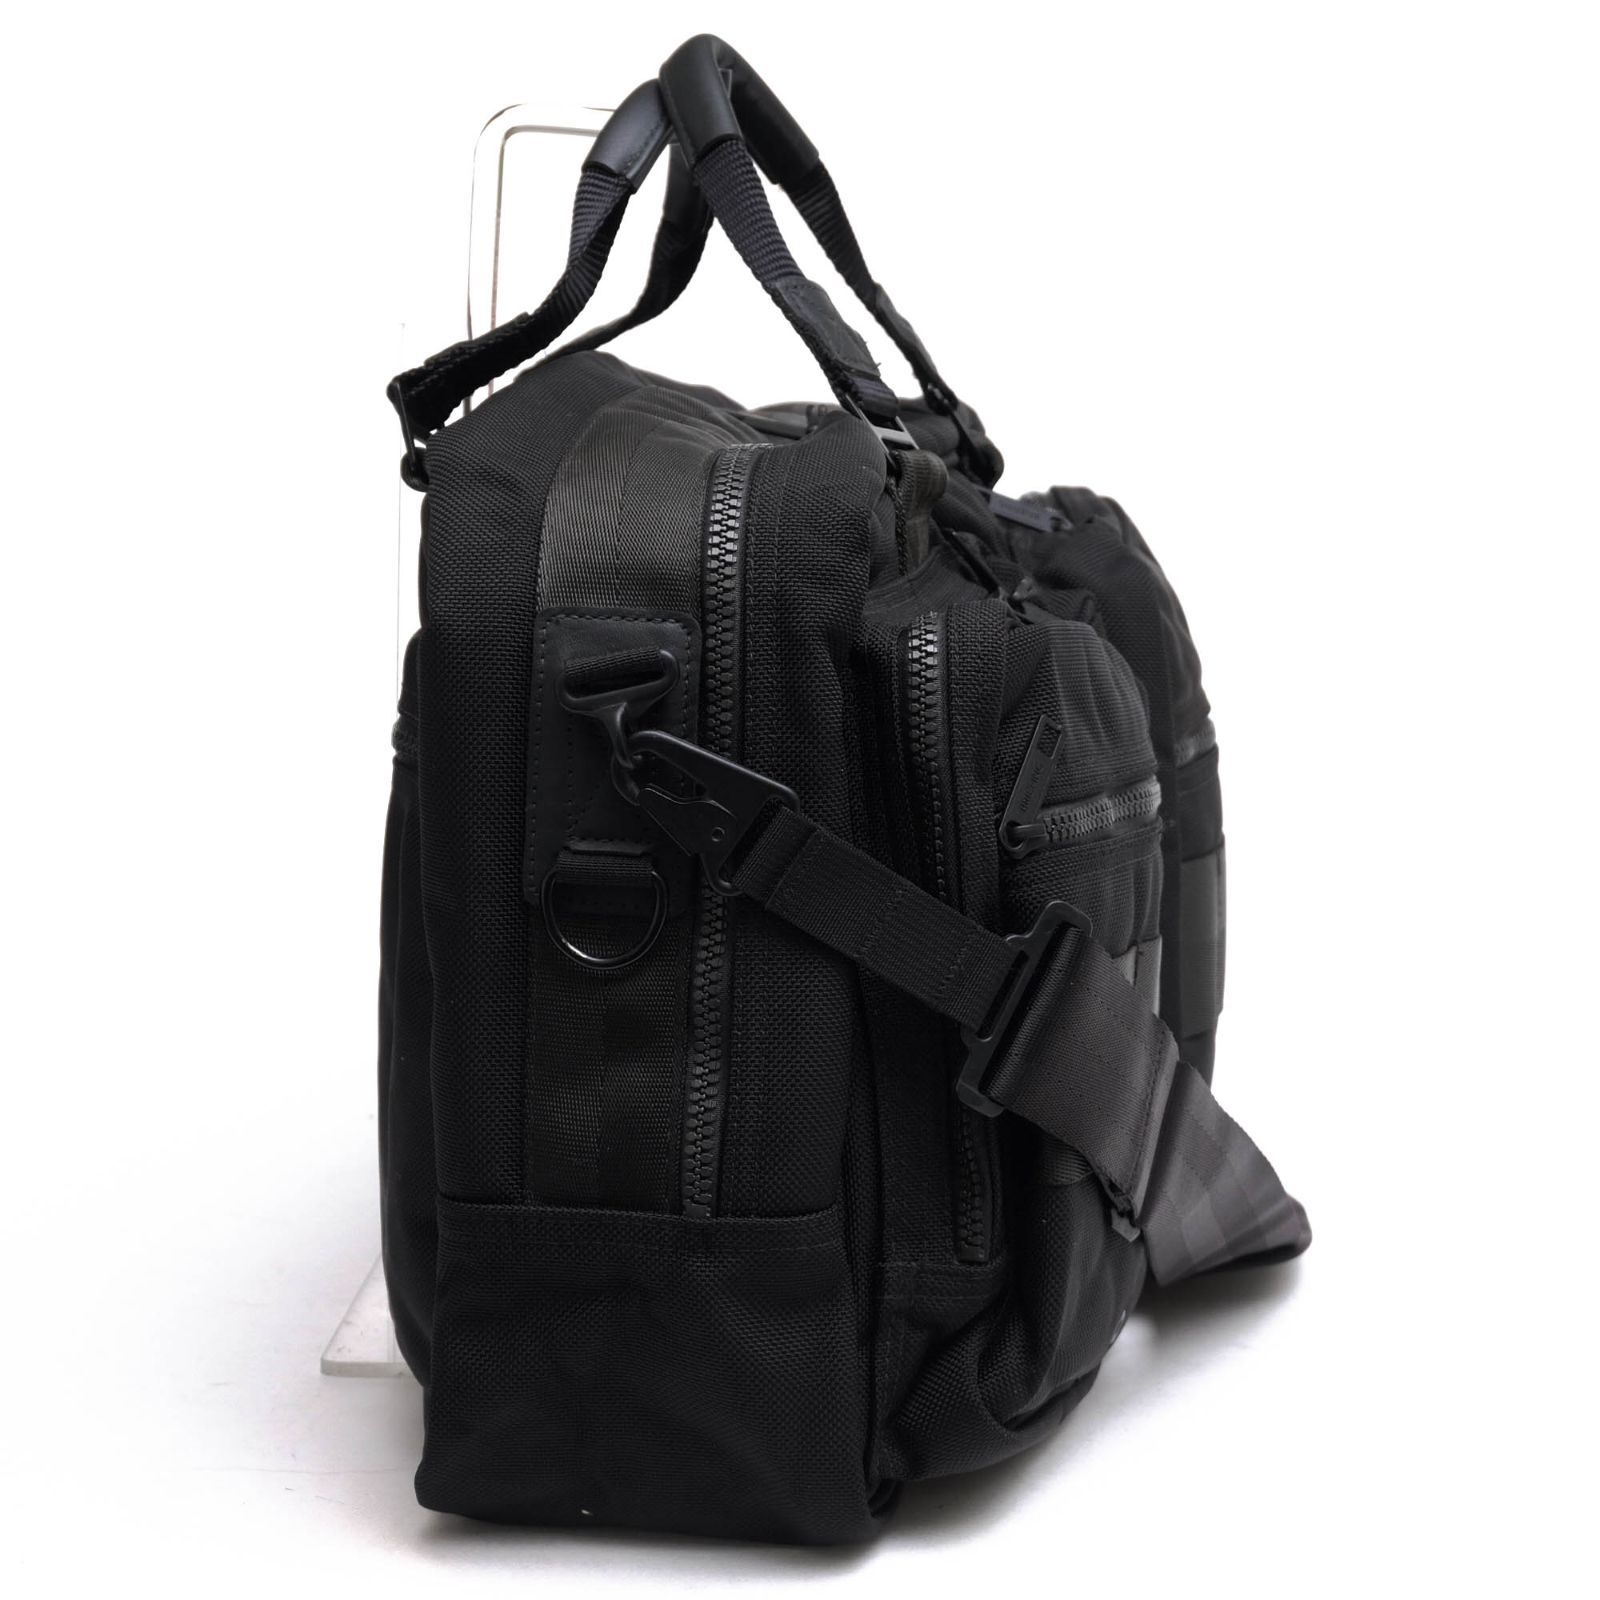 ブリーフィング／BRIEFING バッグ ブリーフケース ビジネスバッグ 鞄 ビジネス メンズ 男性 男性用ナイロン ブラック 黒  BRB022219 TRAVEL COMP BLACK LINE トラベルコンプ 2WAY ショルダーバッグ